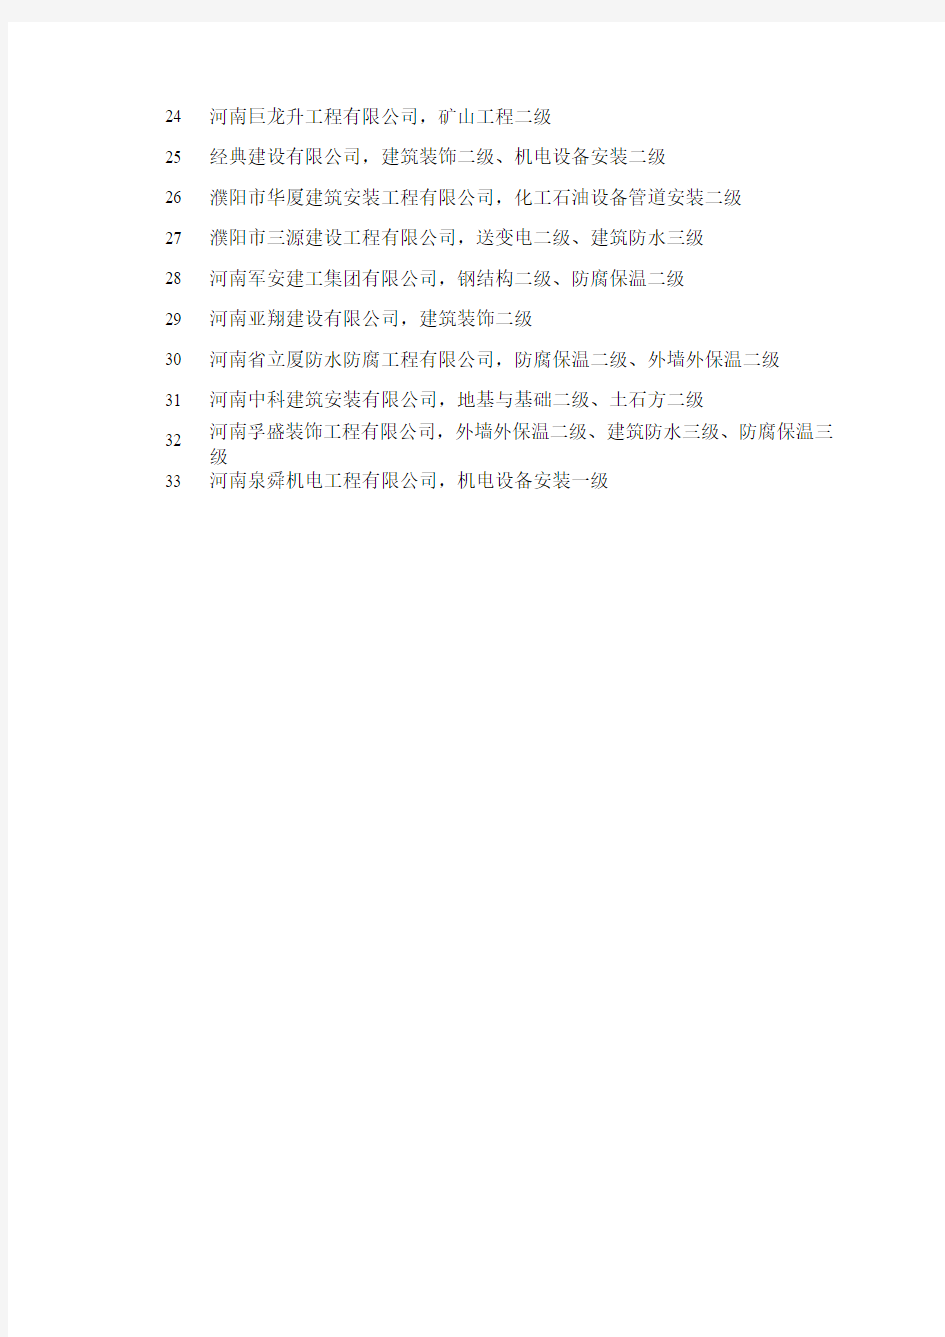 河南省2009年第三批通过审批的建筑业企业名单